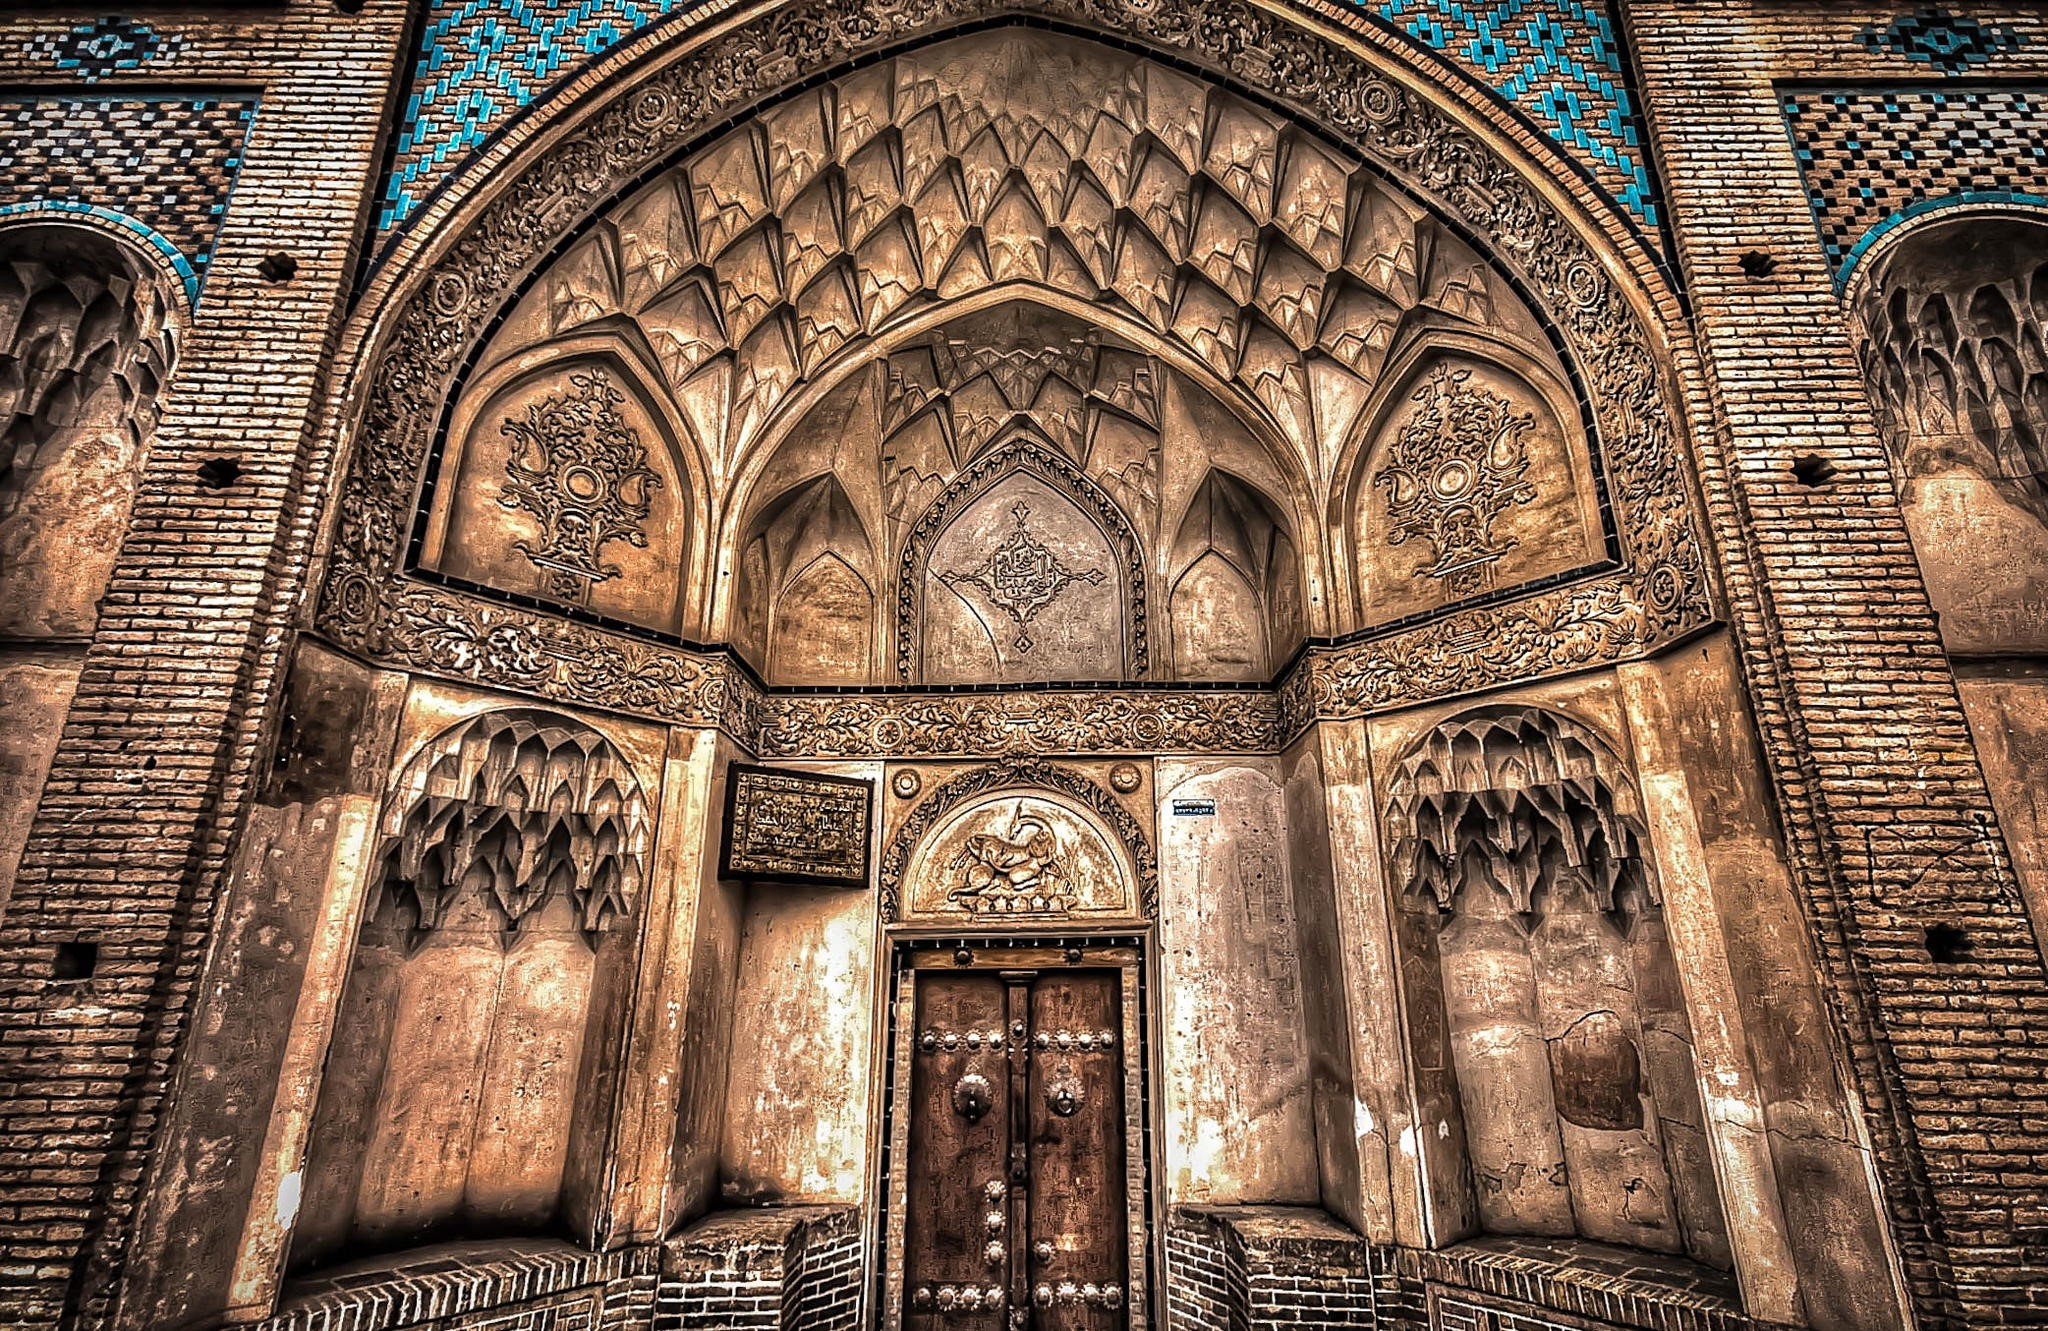 Wallpaper / Iran, history, architecture, Islamic architecture free download